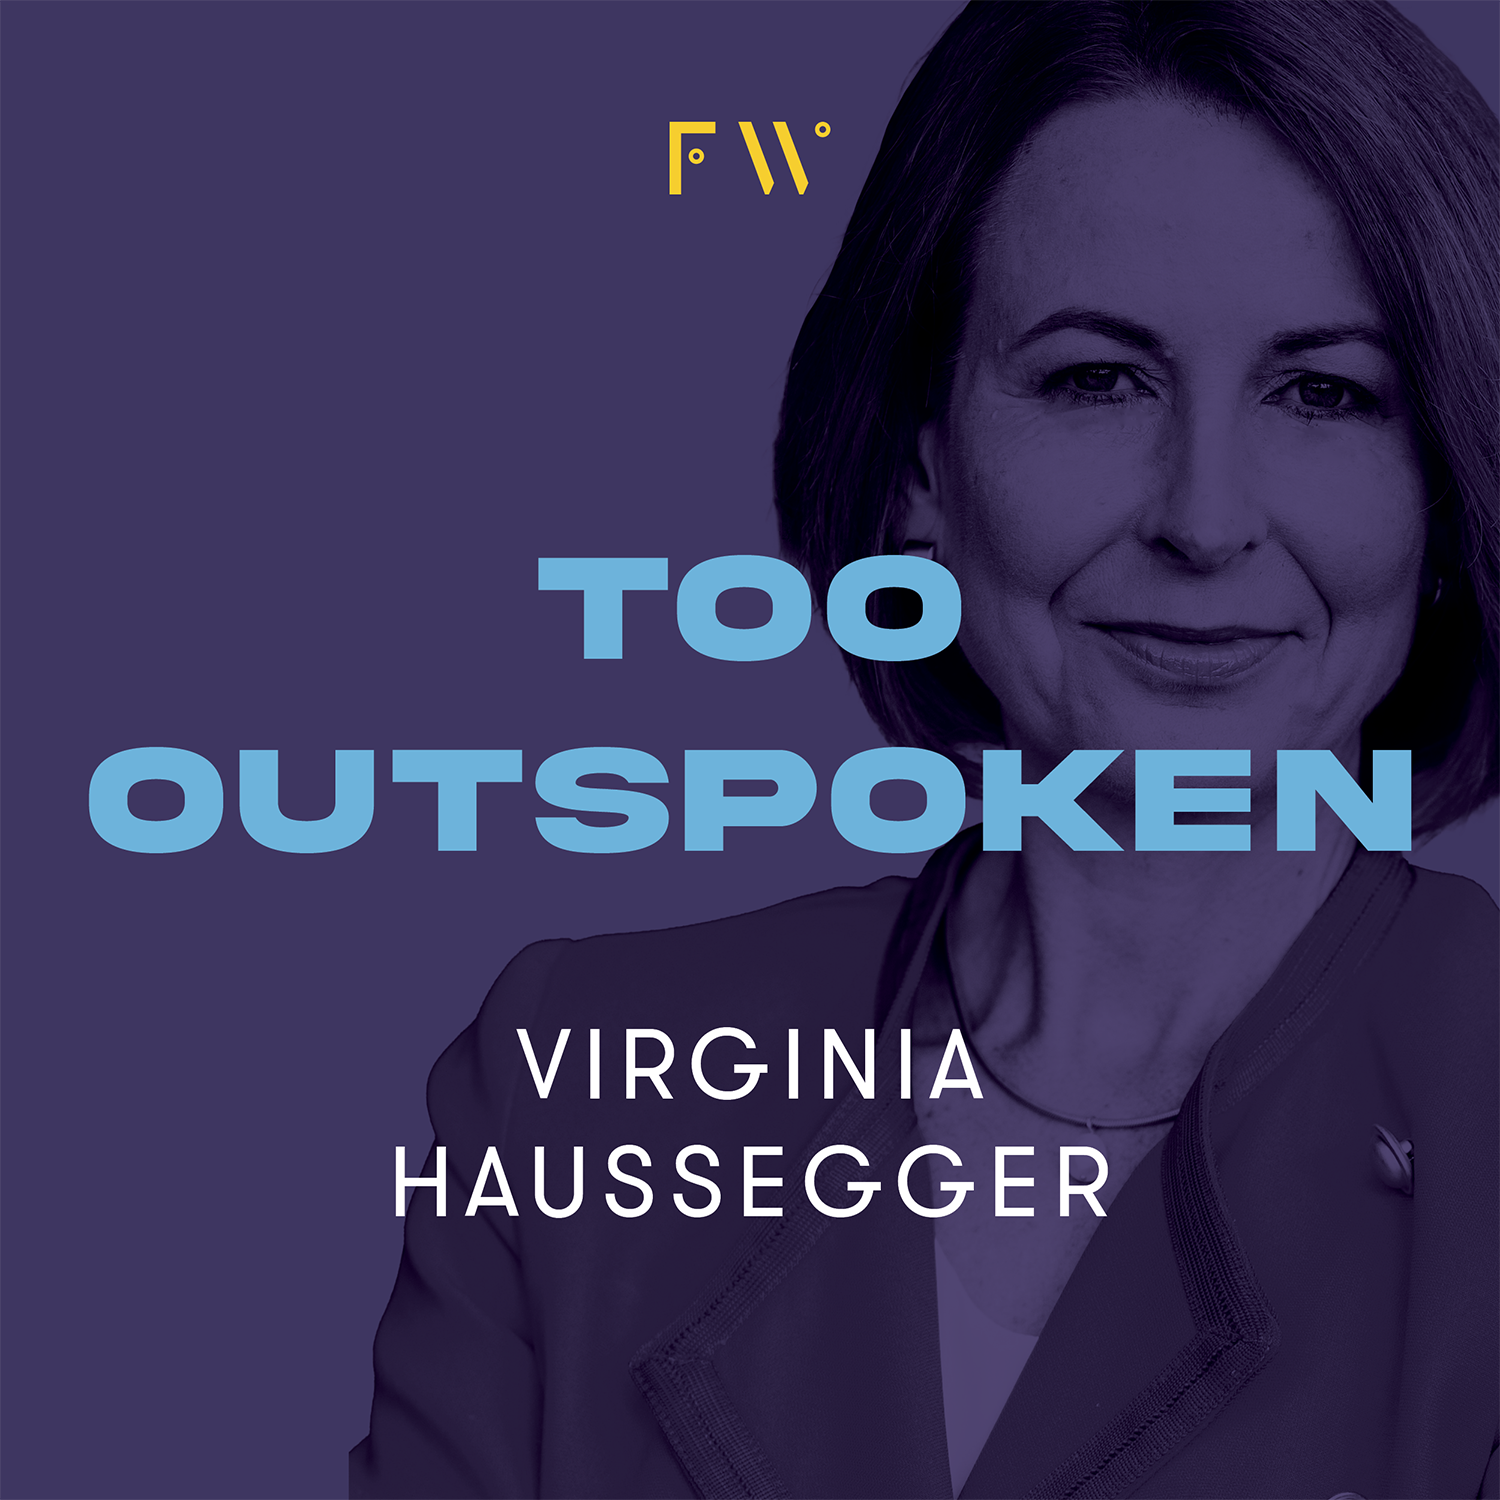 7. Virginia Haussegger was "too outspoken"